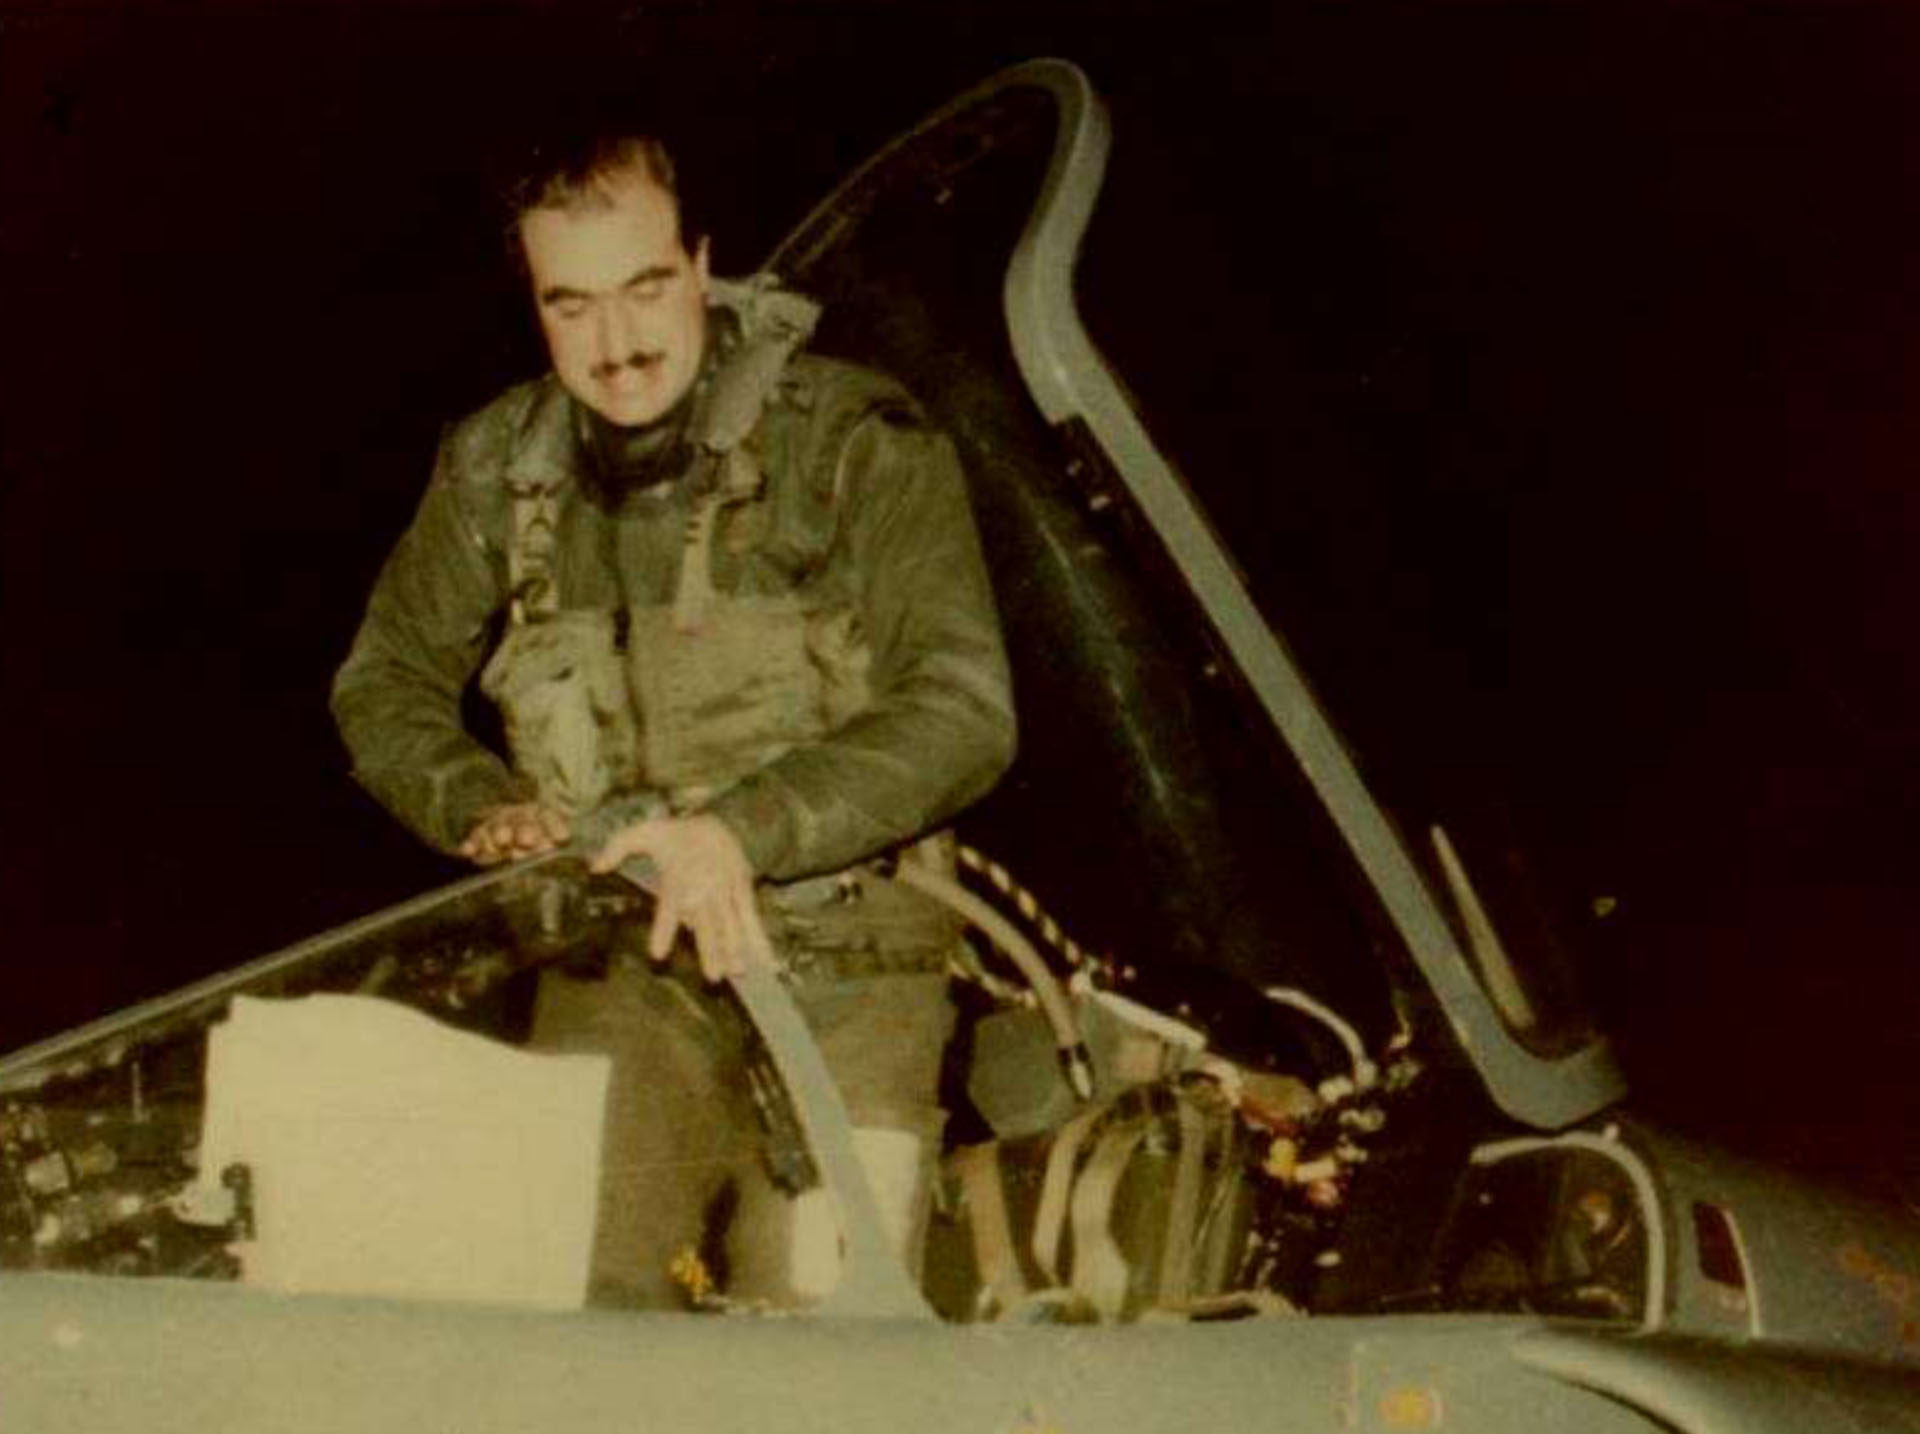 Roberto Curilovi, alias Toro, al regresar de la misión del 25 de mayo. El atraco había sido letal, aunque todavía el resultado era un enigma
